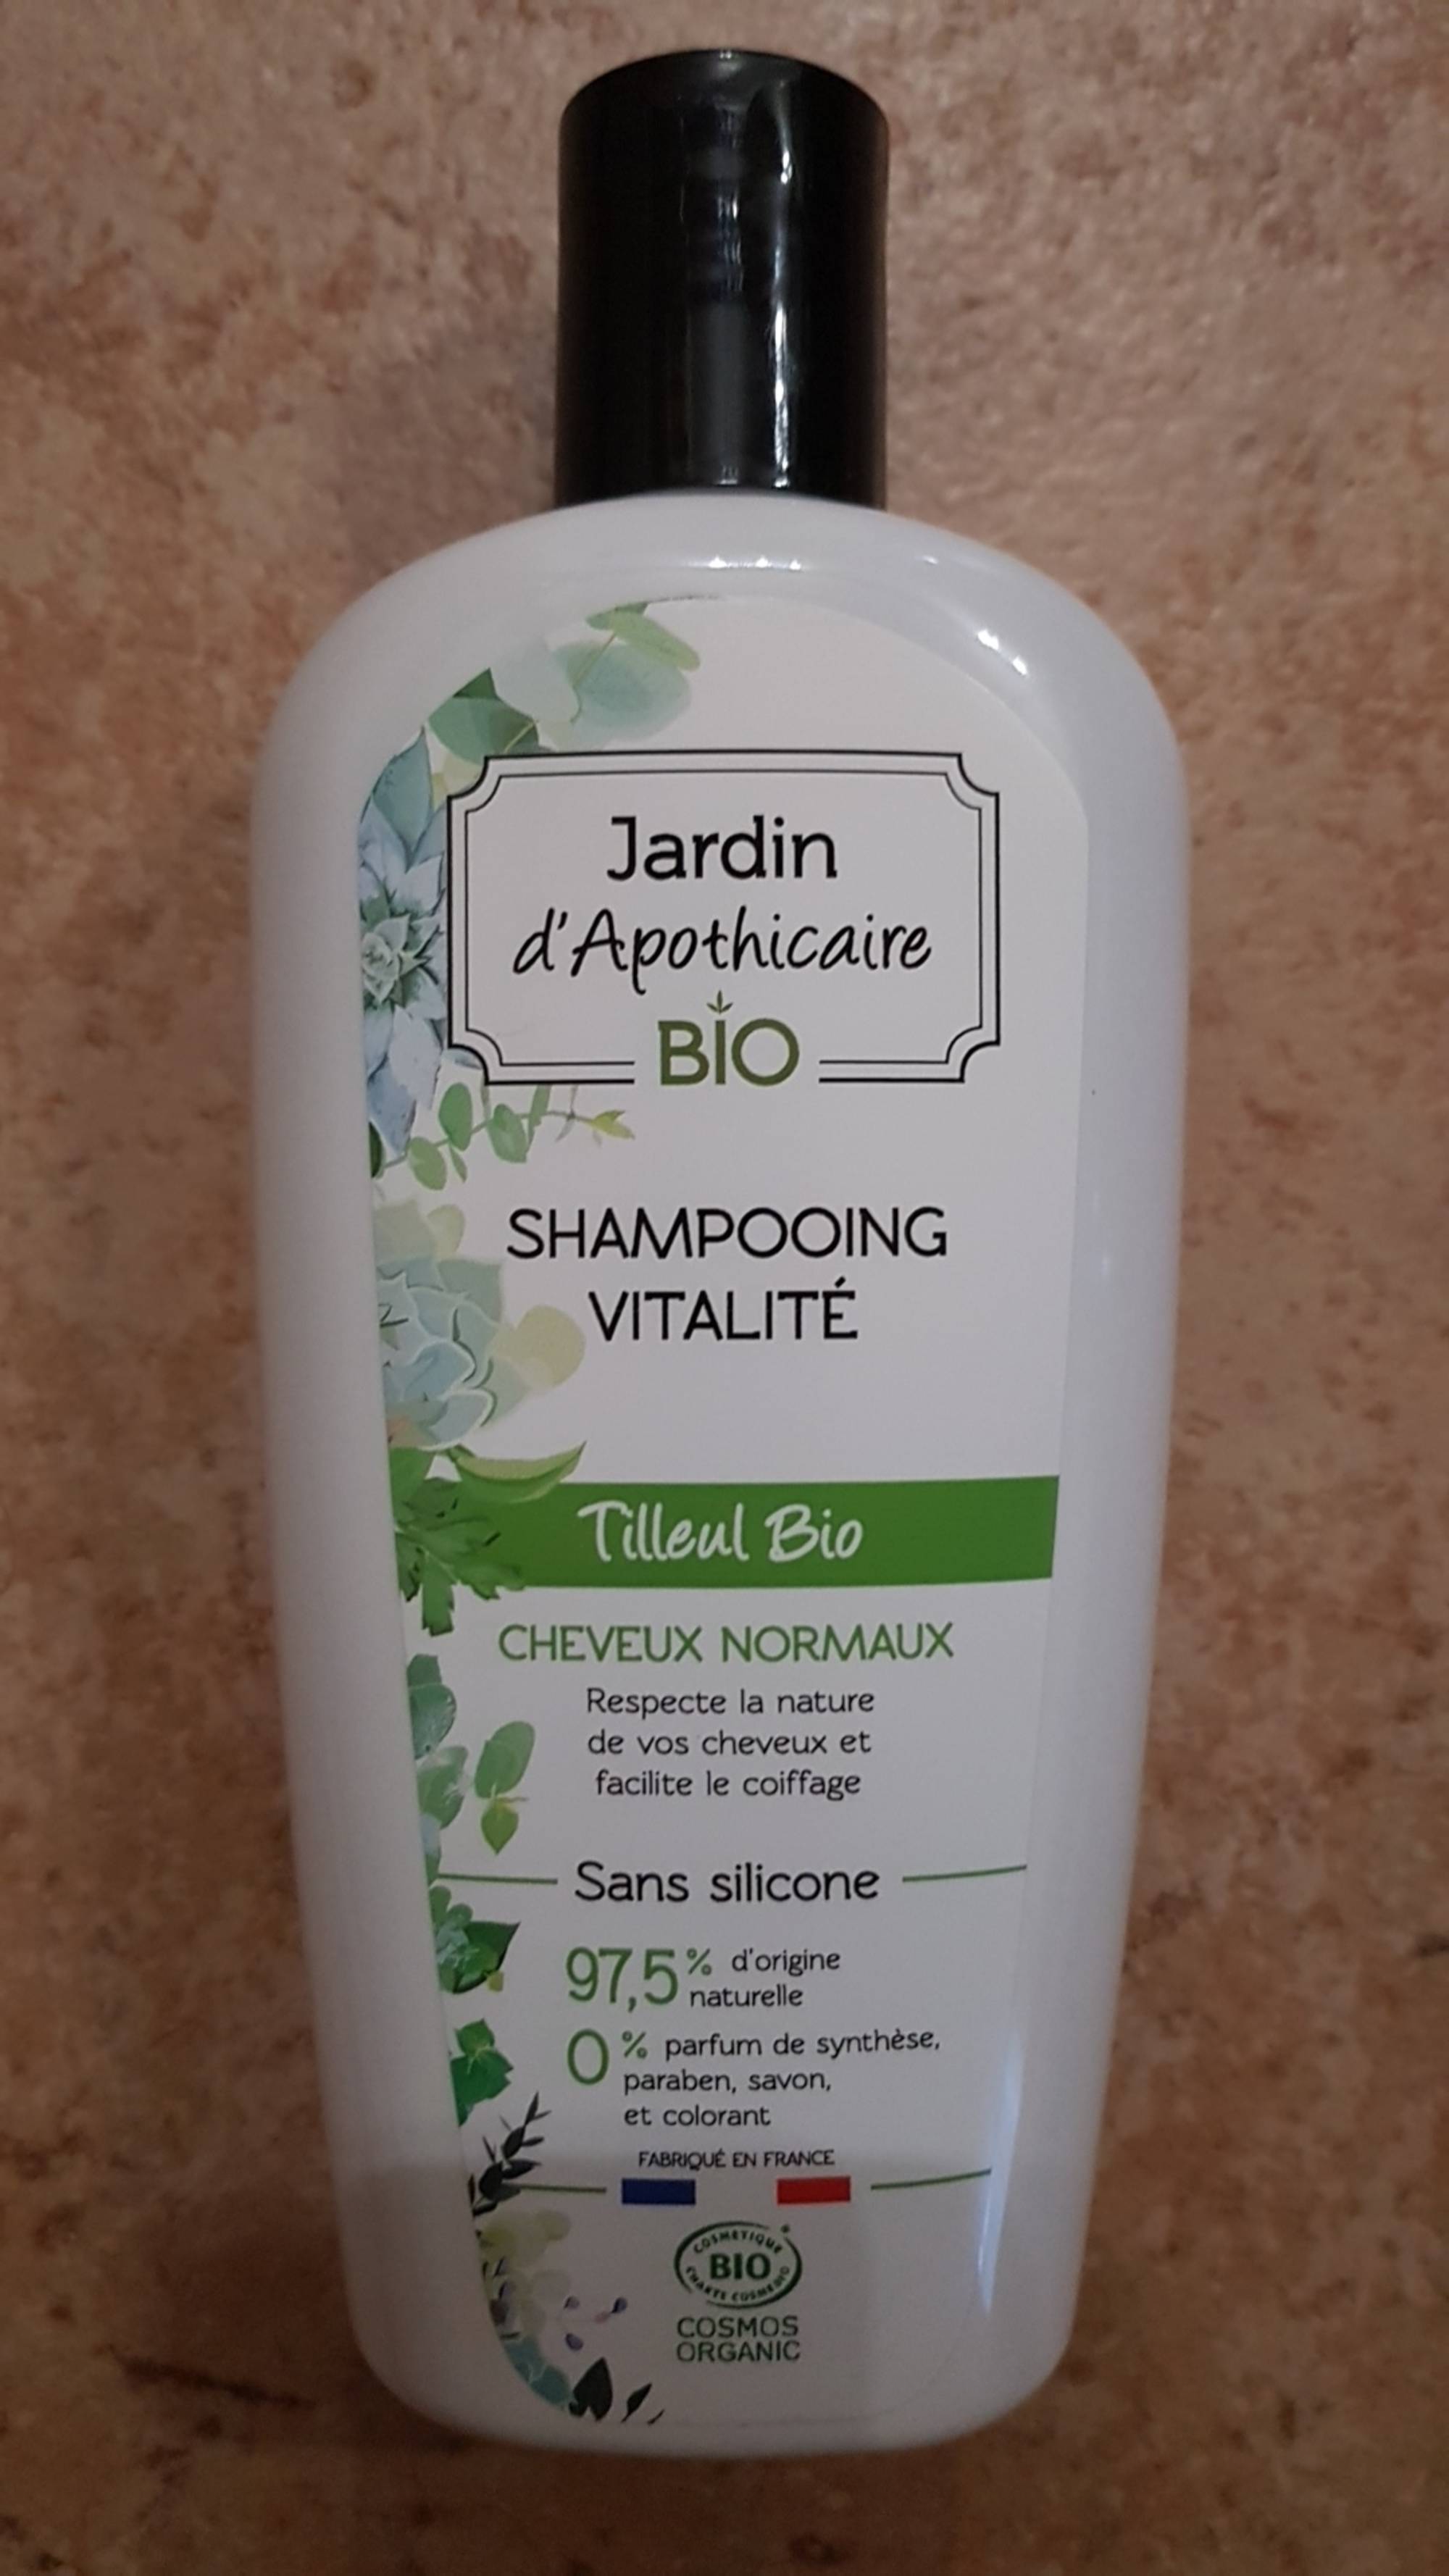 JARDIN D'APOTHICAIRE BIO - Tilleul bio - Shampooing vitalité